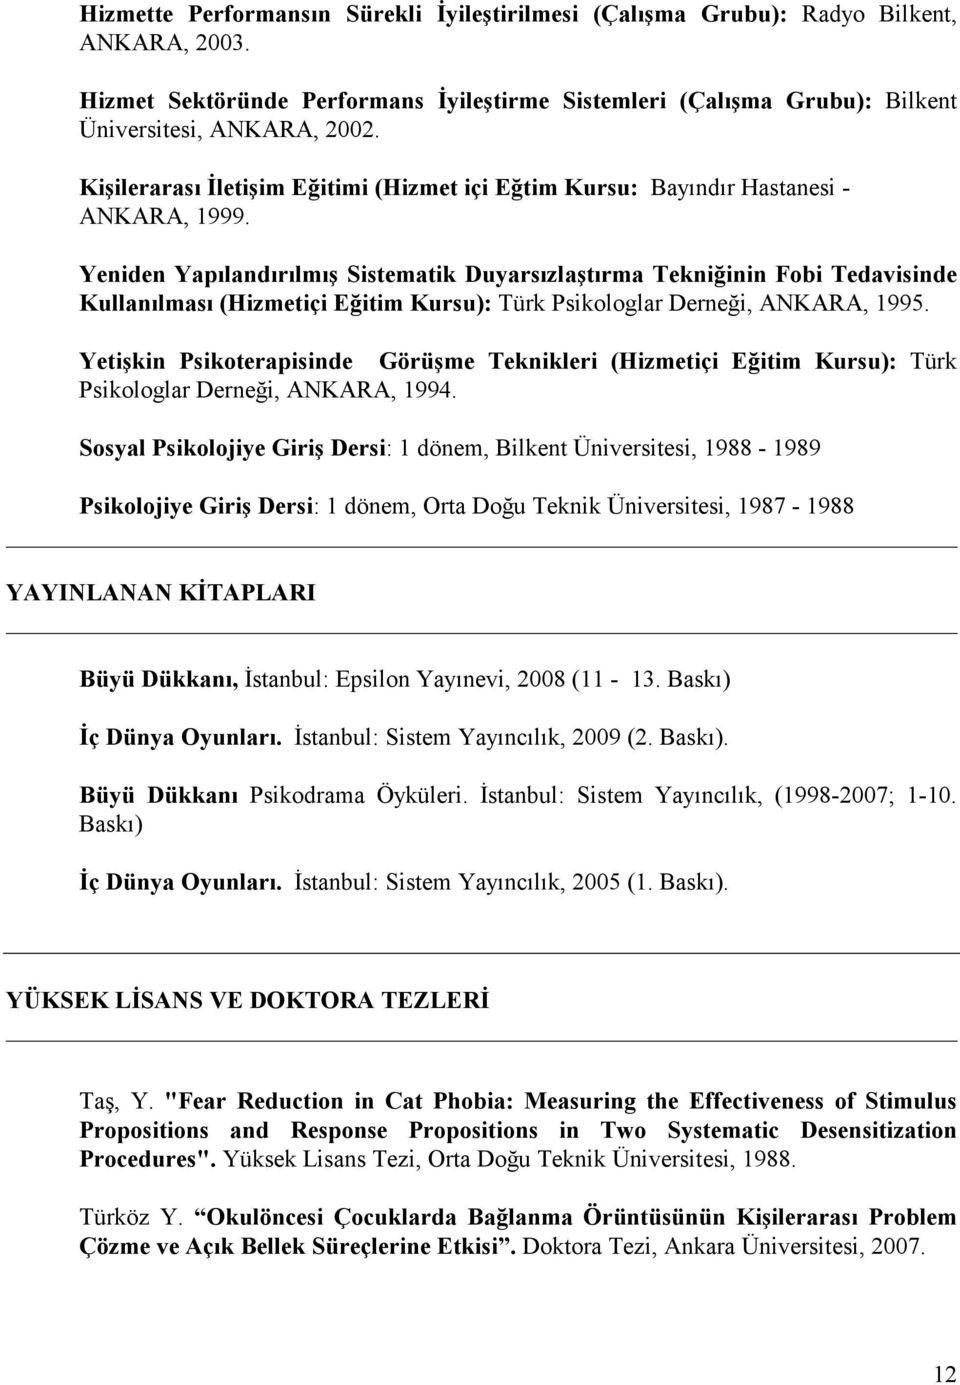 Yeniden Yapılandırılmış Sistematik Duyarsızlaştırma Tekniğinin Fobi Tedavisinde Kullanılması (Hizmetiçi Eğitim Kursu): Türk Psikologlar Derneği, ANKARA, 1995.